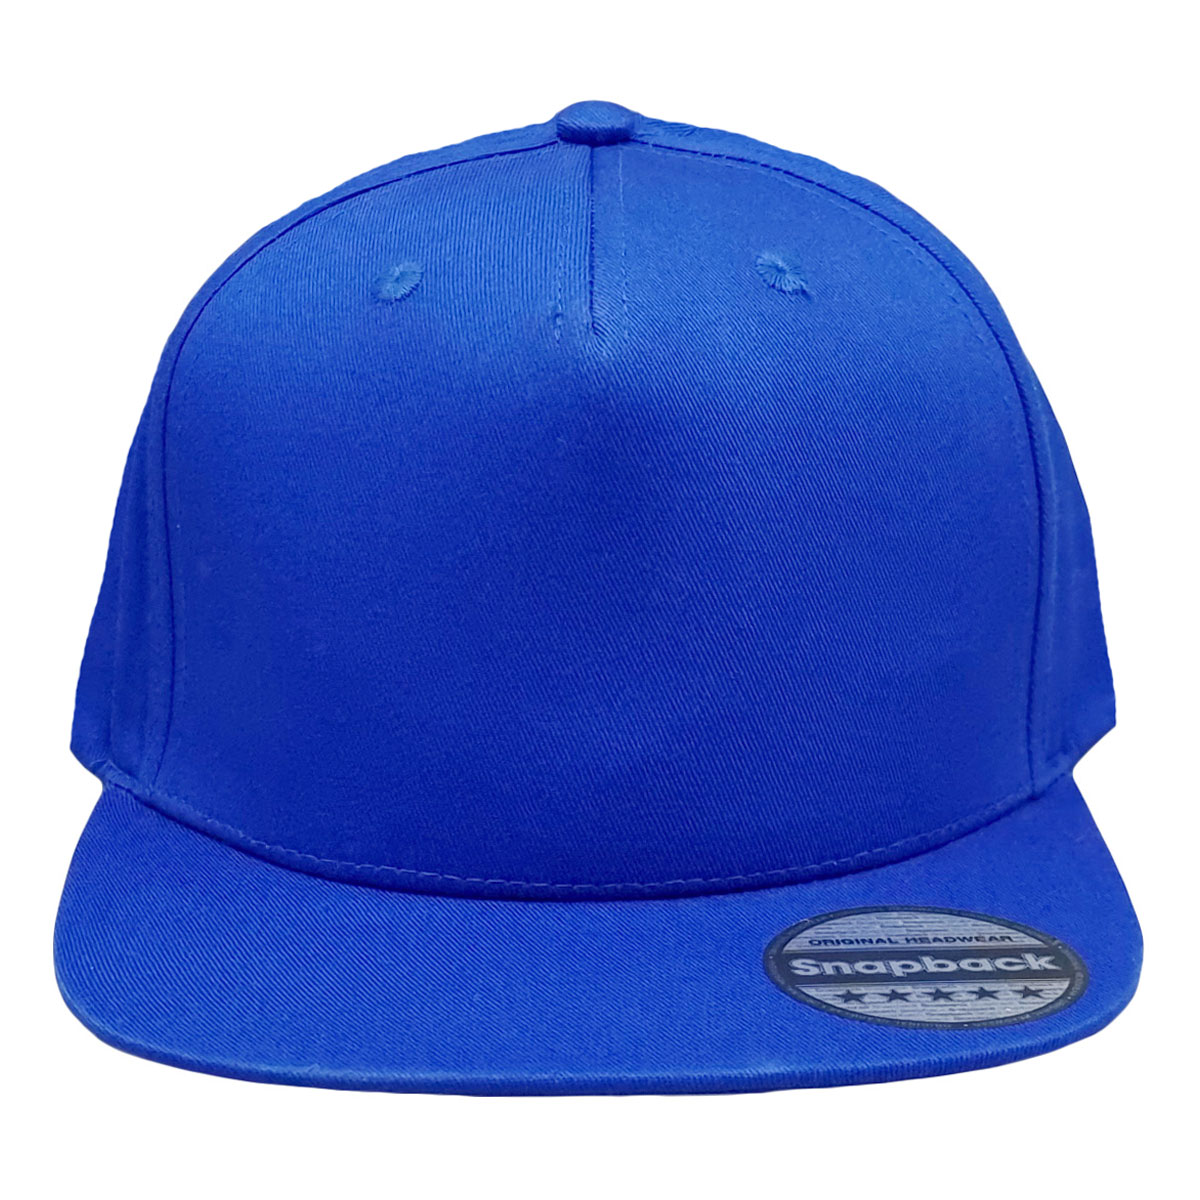 kompas Niet doen Uitsluiting Rapper Snapback cap blauw - Maffe caps